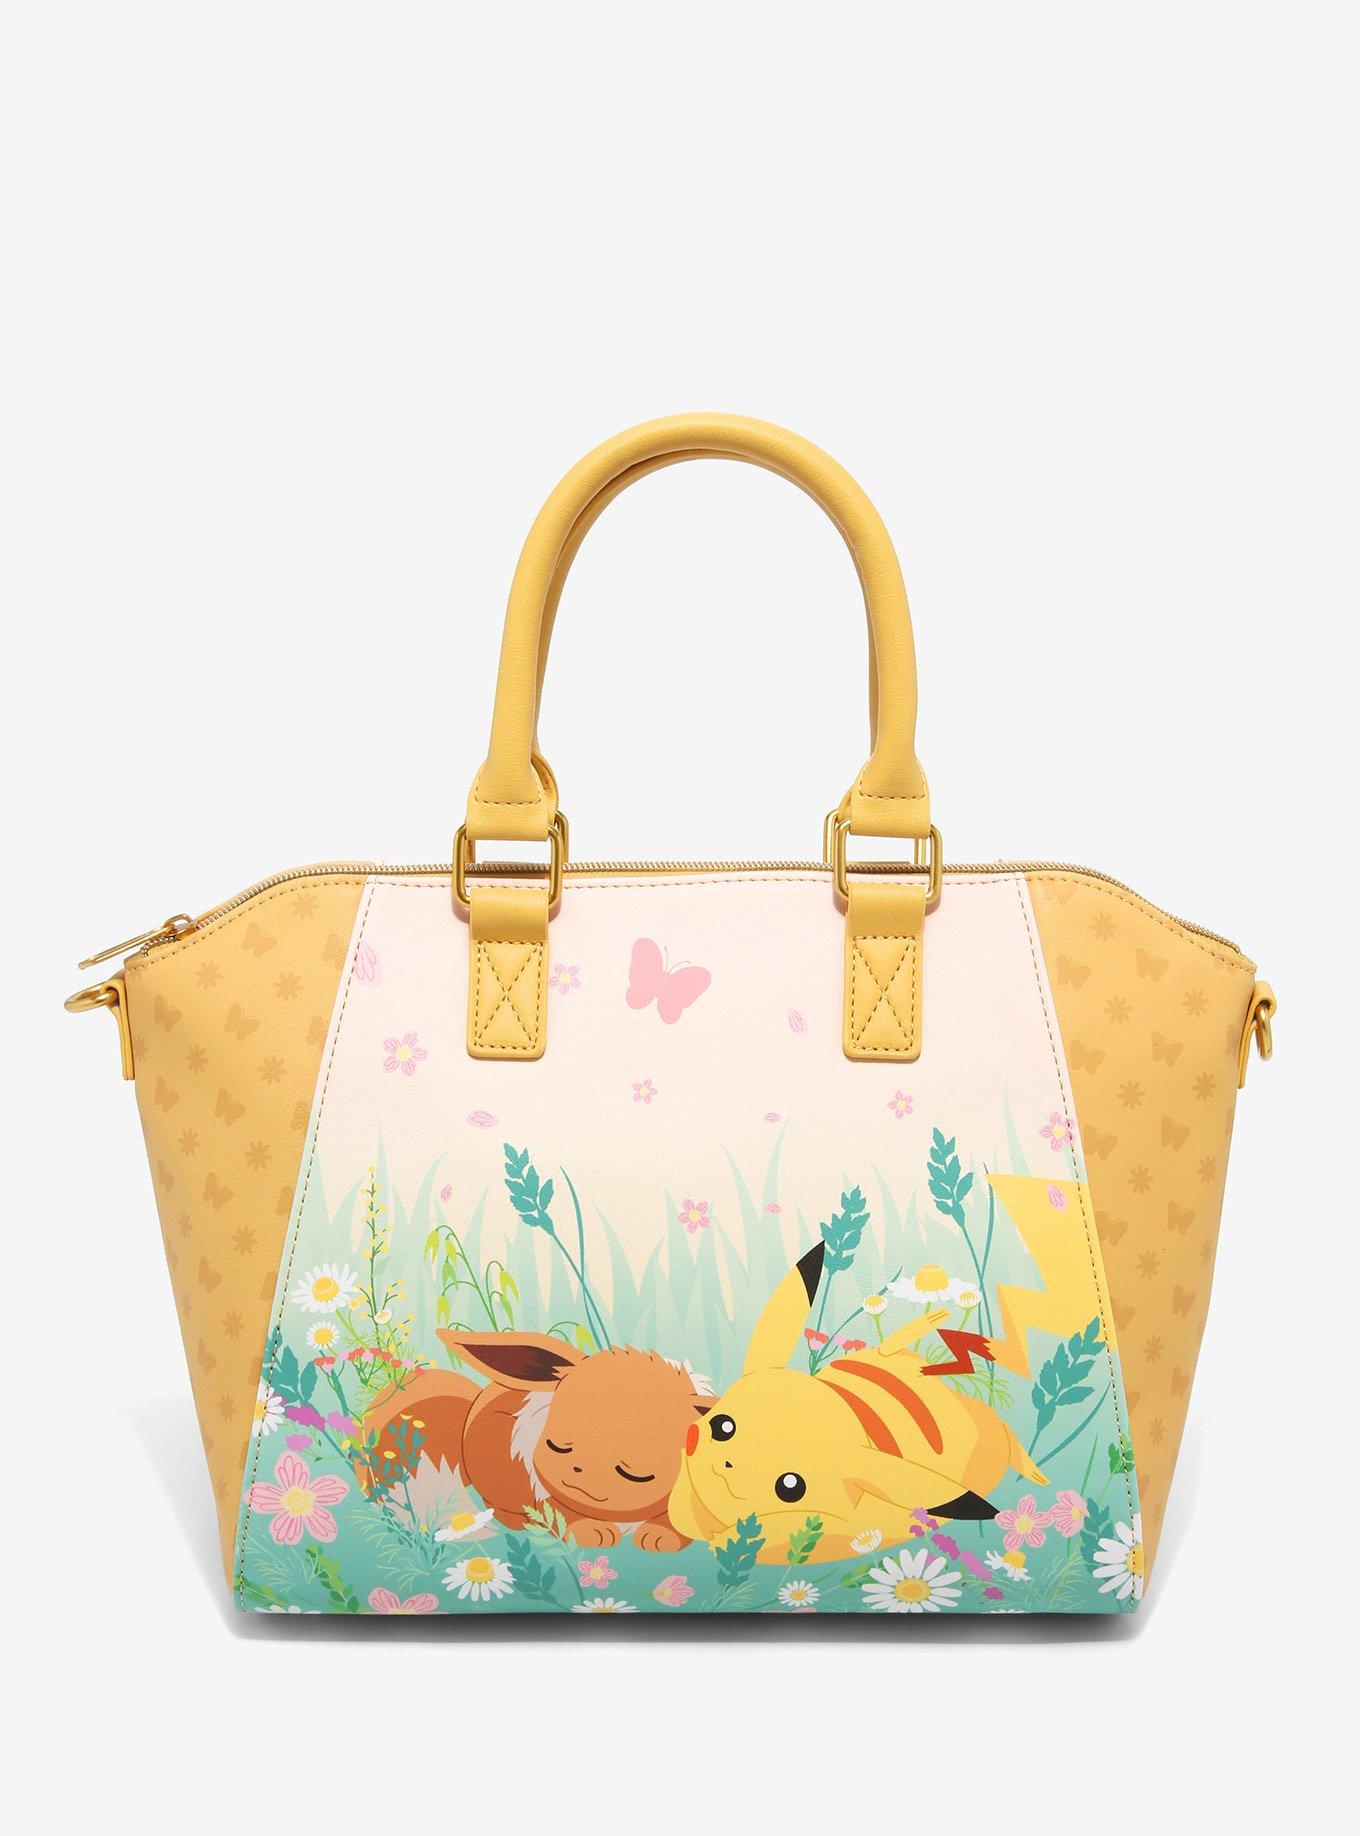 Loungefly Pokemon Eevee & Pikachu Satchel Bag